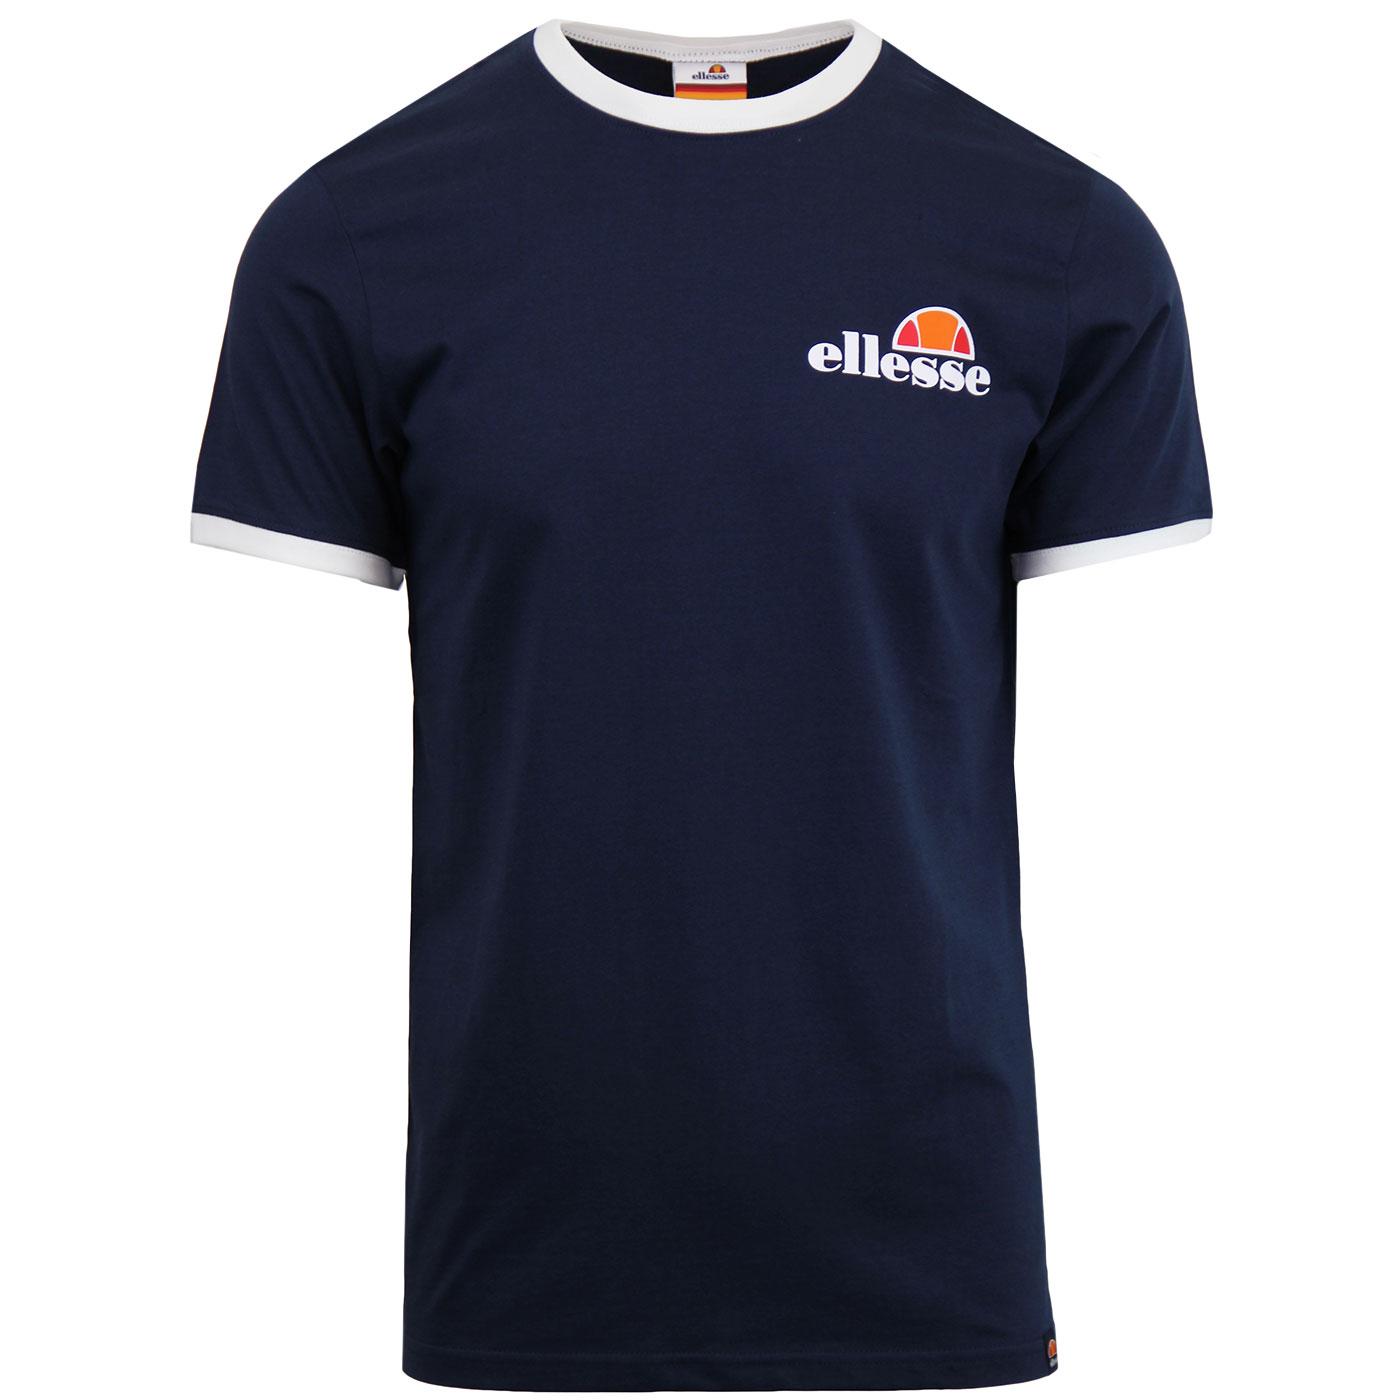 Agrigento ELLESSE Men's Retro Ringer T-shirt (DB)